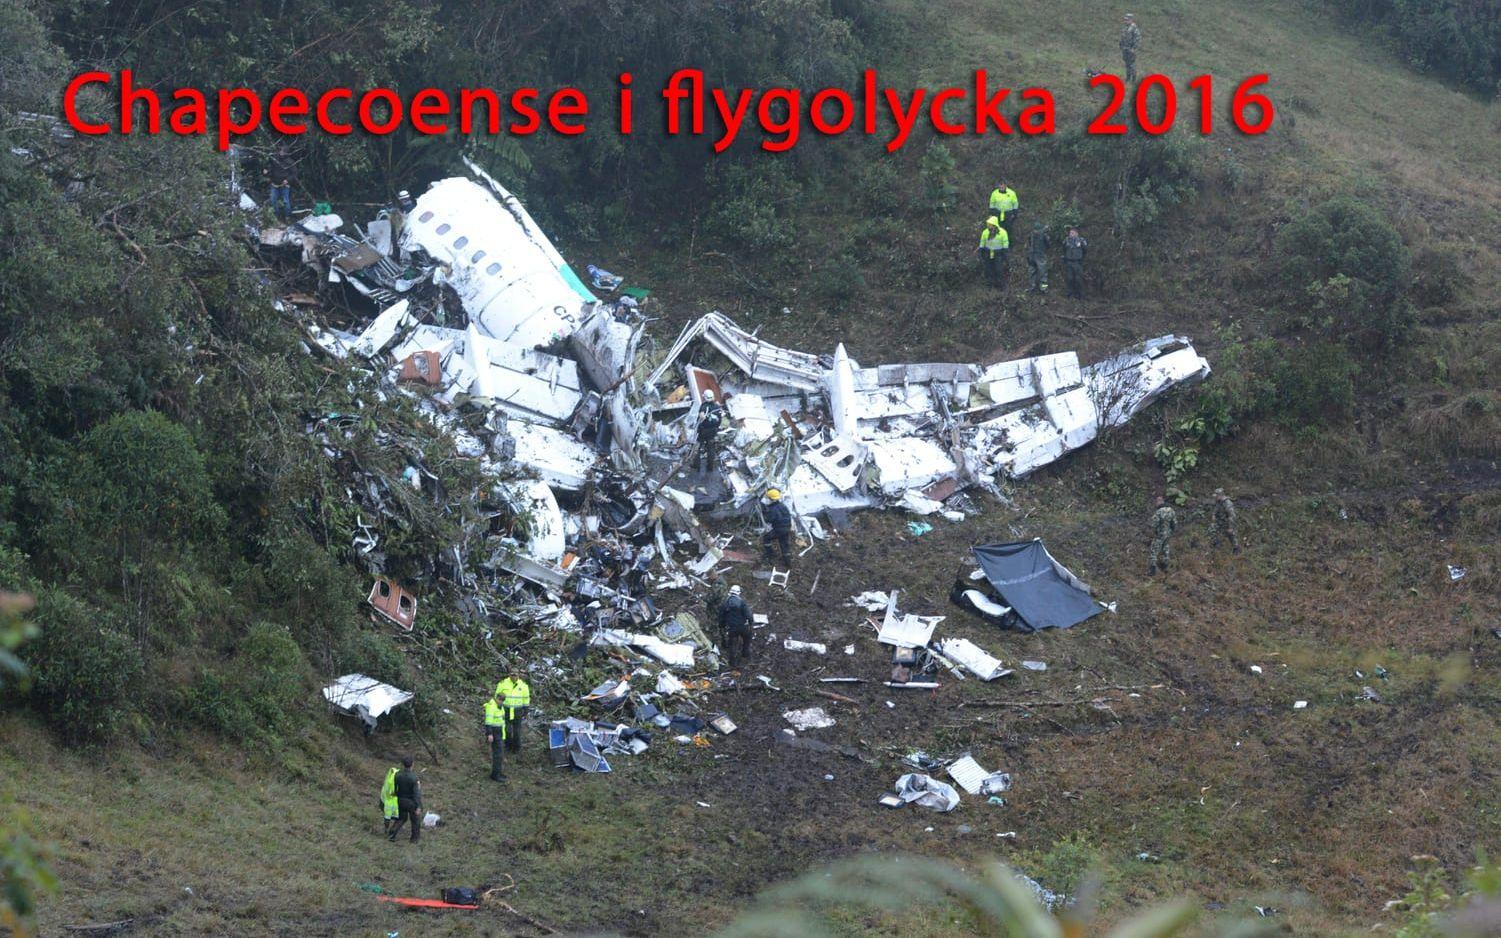 Den brasilianska fotbollsklubben Chapecoense var med om en fruktansvärd flygolycka i slutet av november i år. Foto: TT